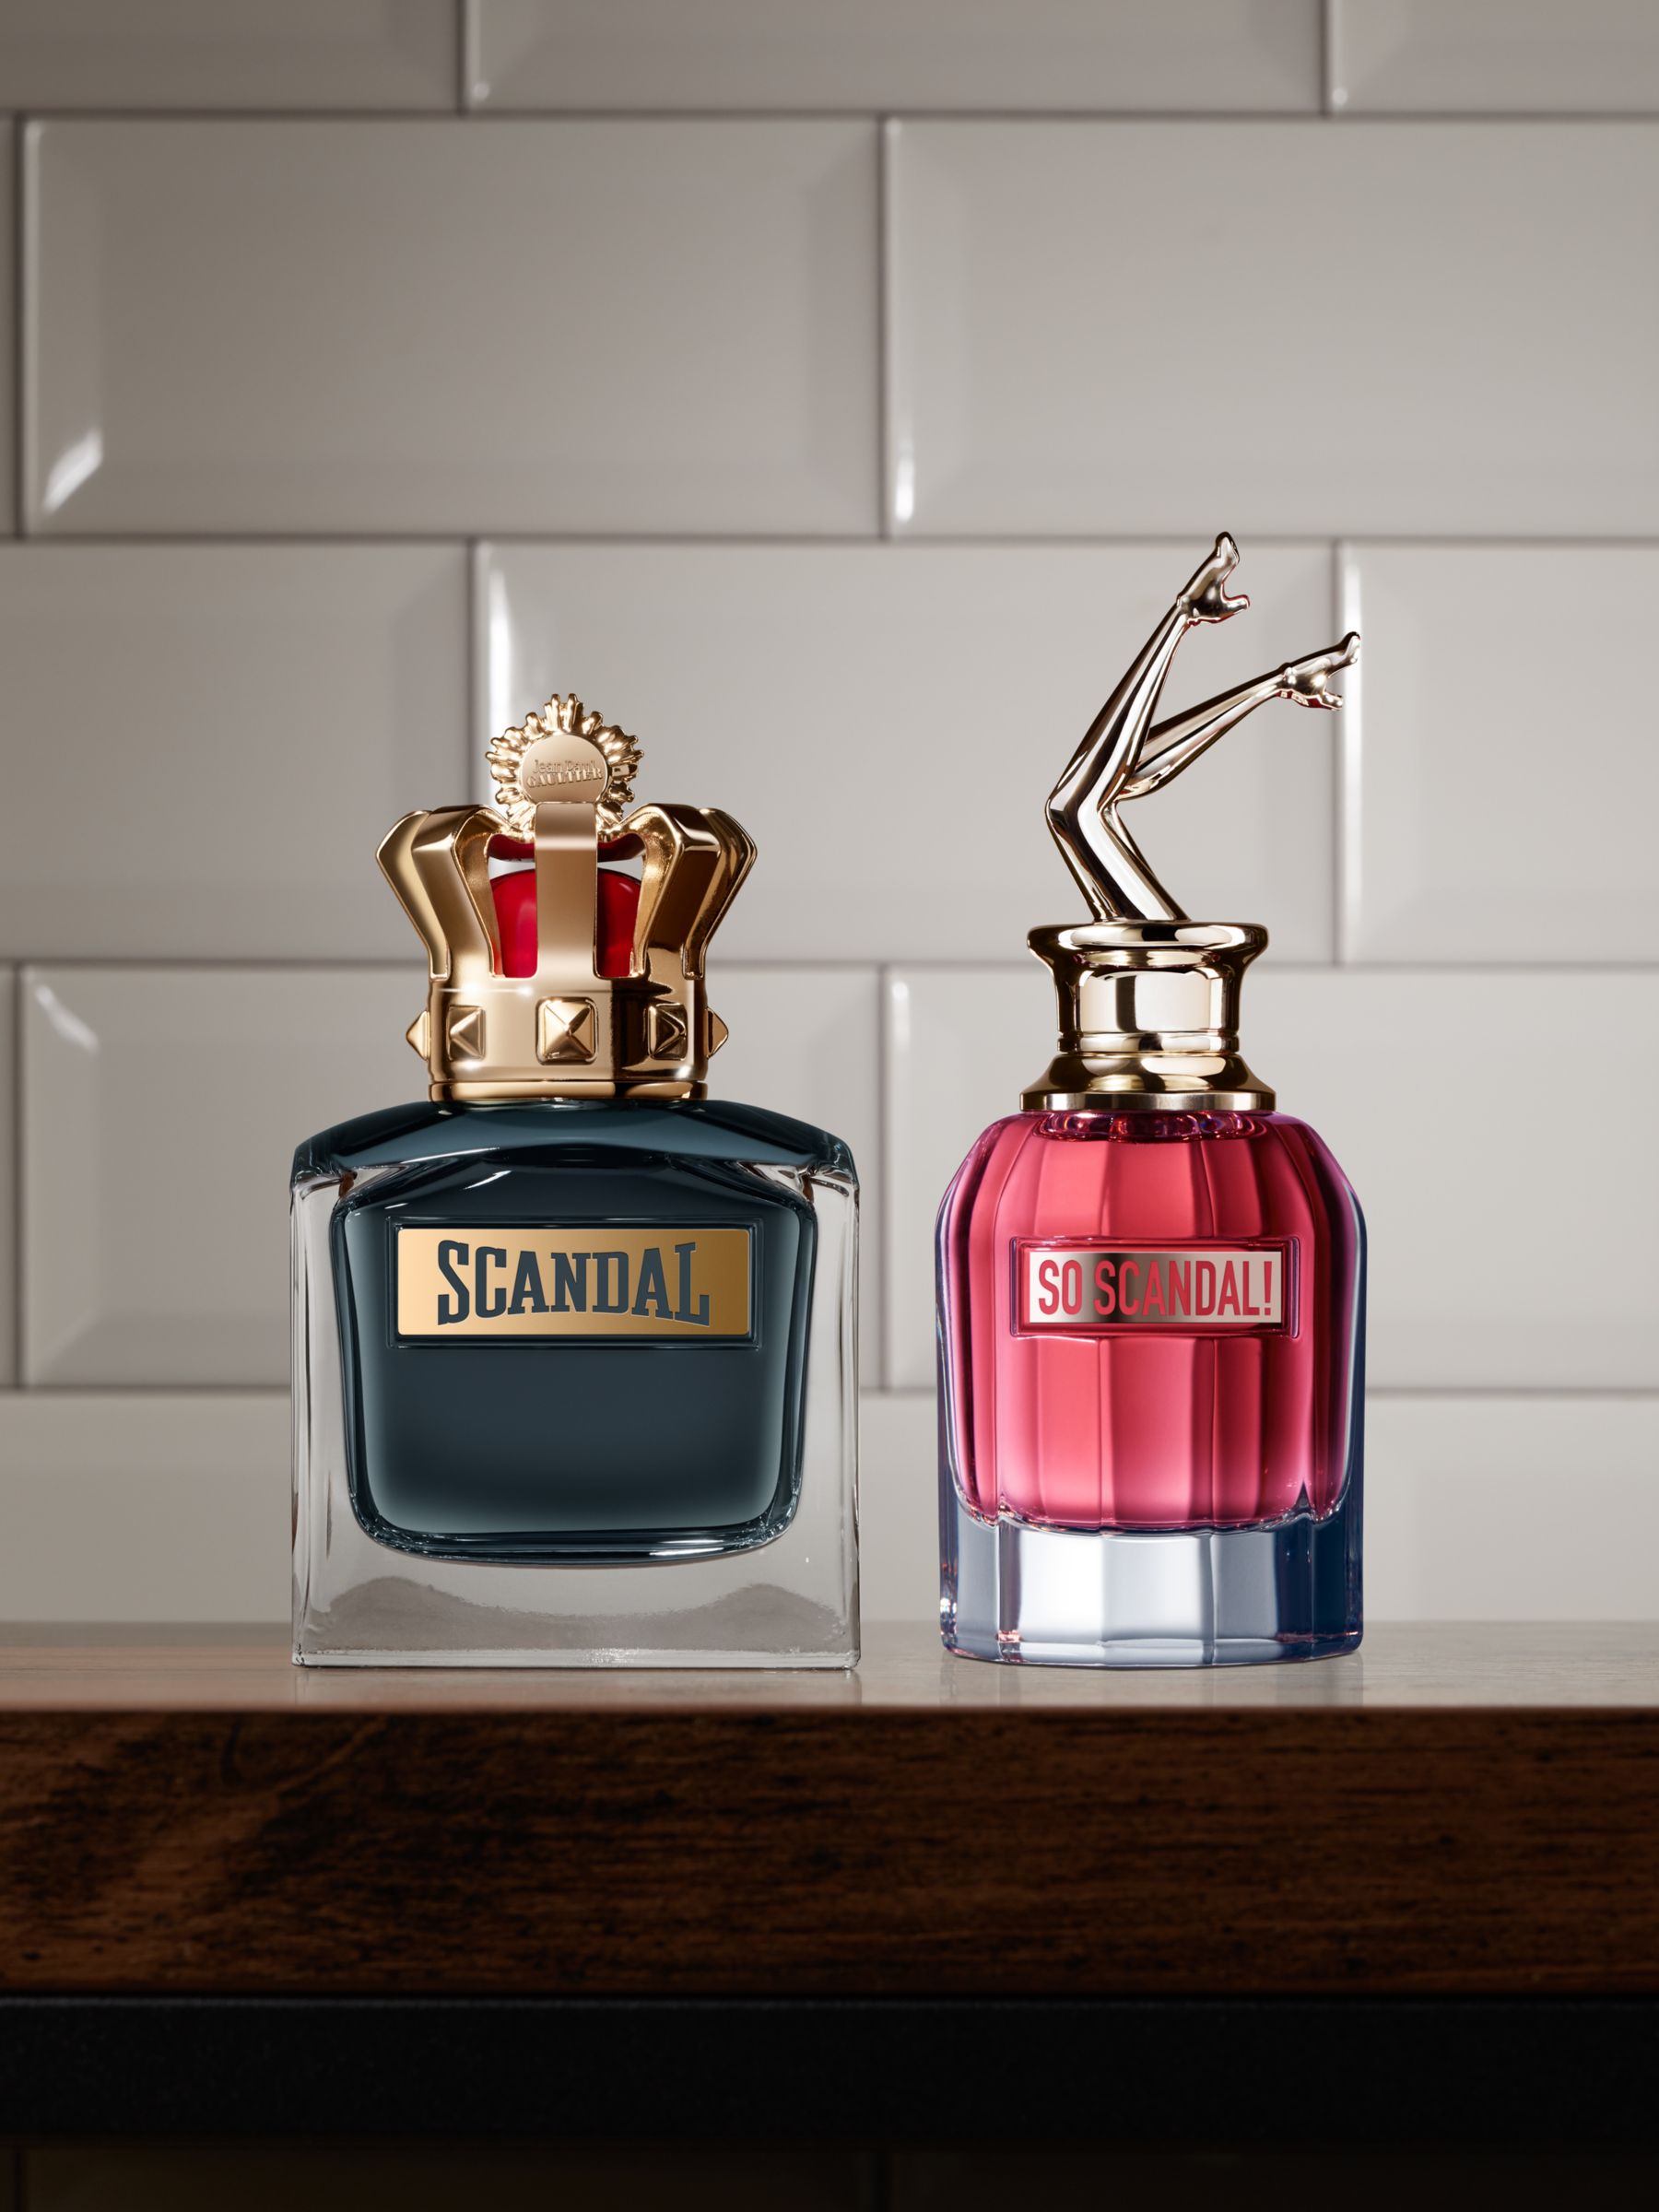 Jean Paul Lewis Eau Scandal! de Partners at Parfum, John & Gaultier 30ml So